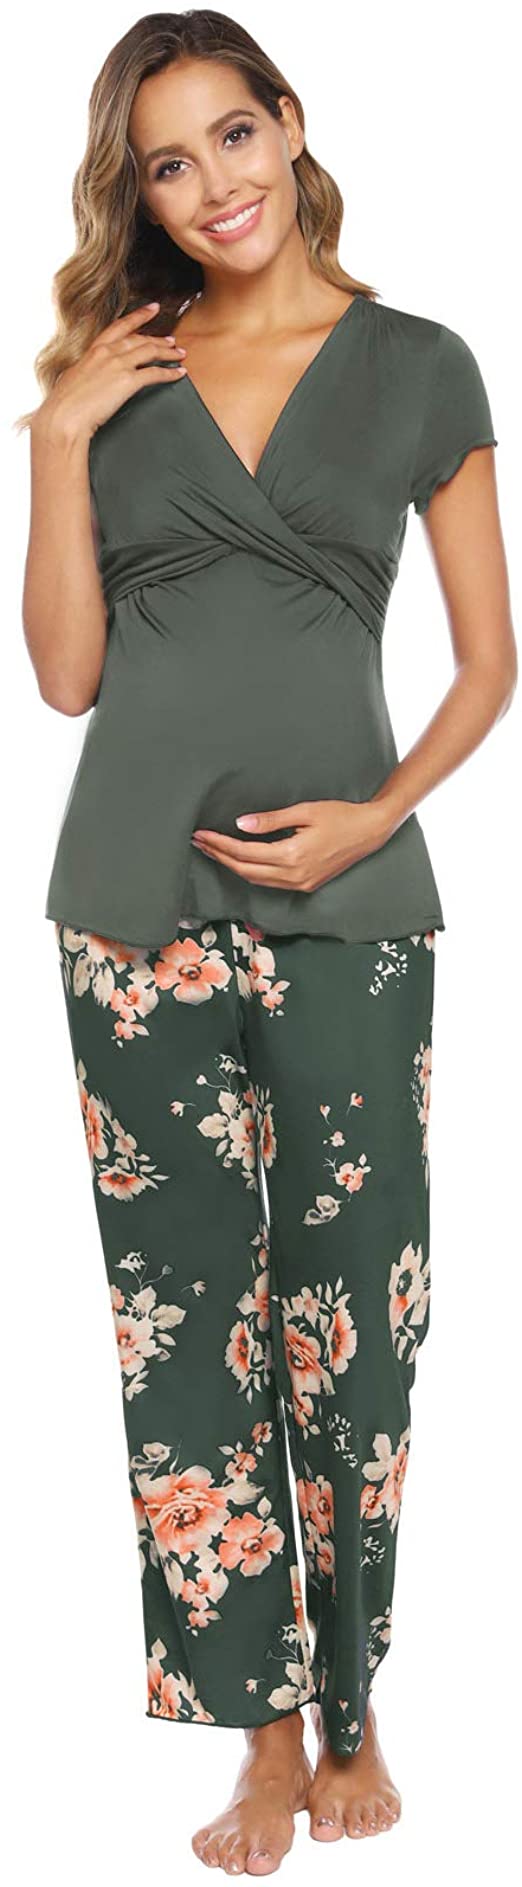 Zexxxy Women Ultra Soft Maternity & Nursing Pajama Set Pregnancy Sleepwear